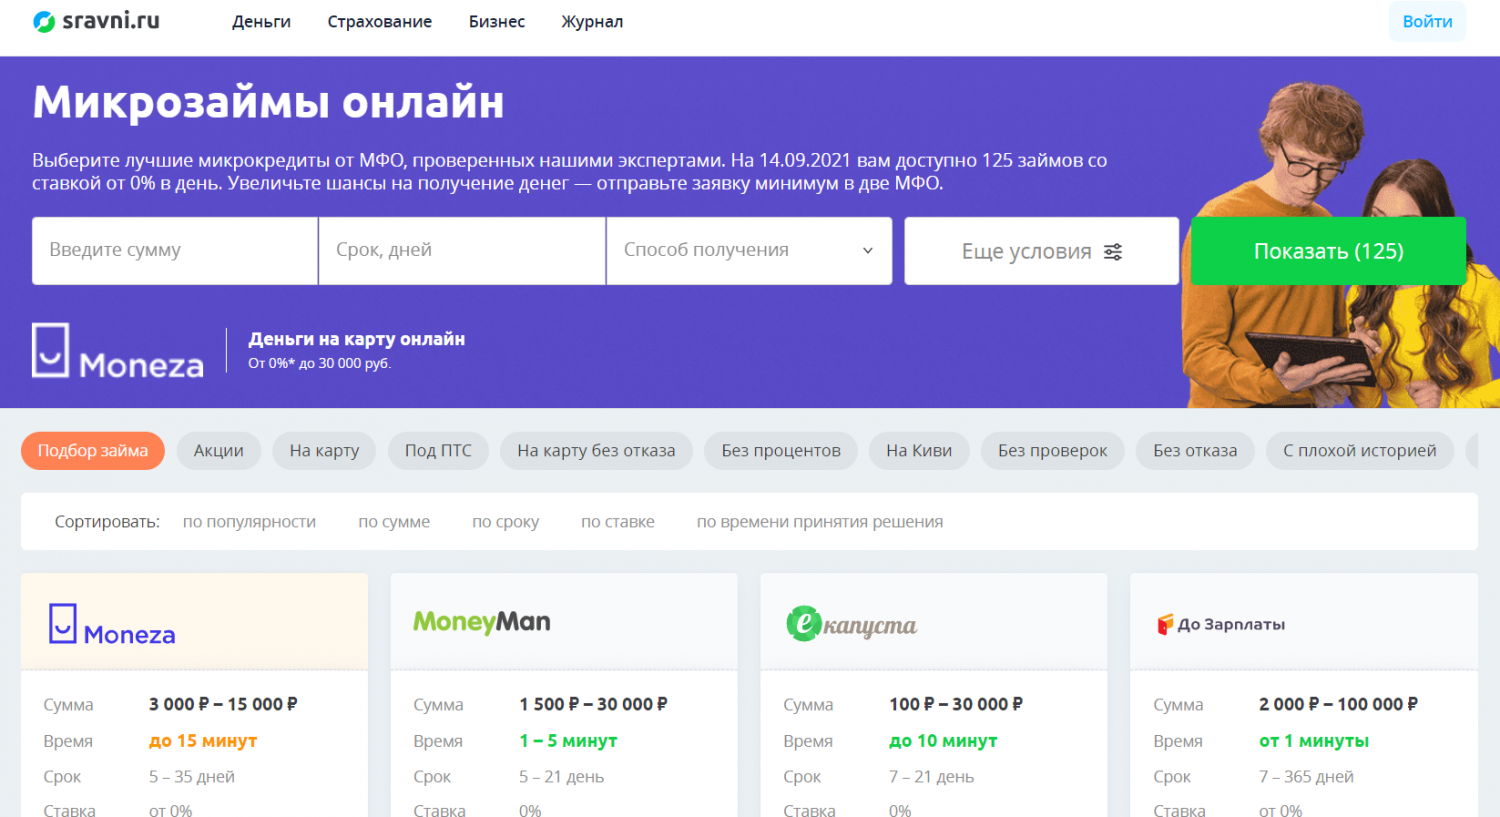 Сравнить предложение микрозаймов на Sravni.ru